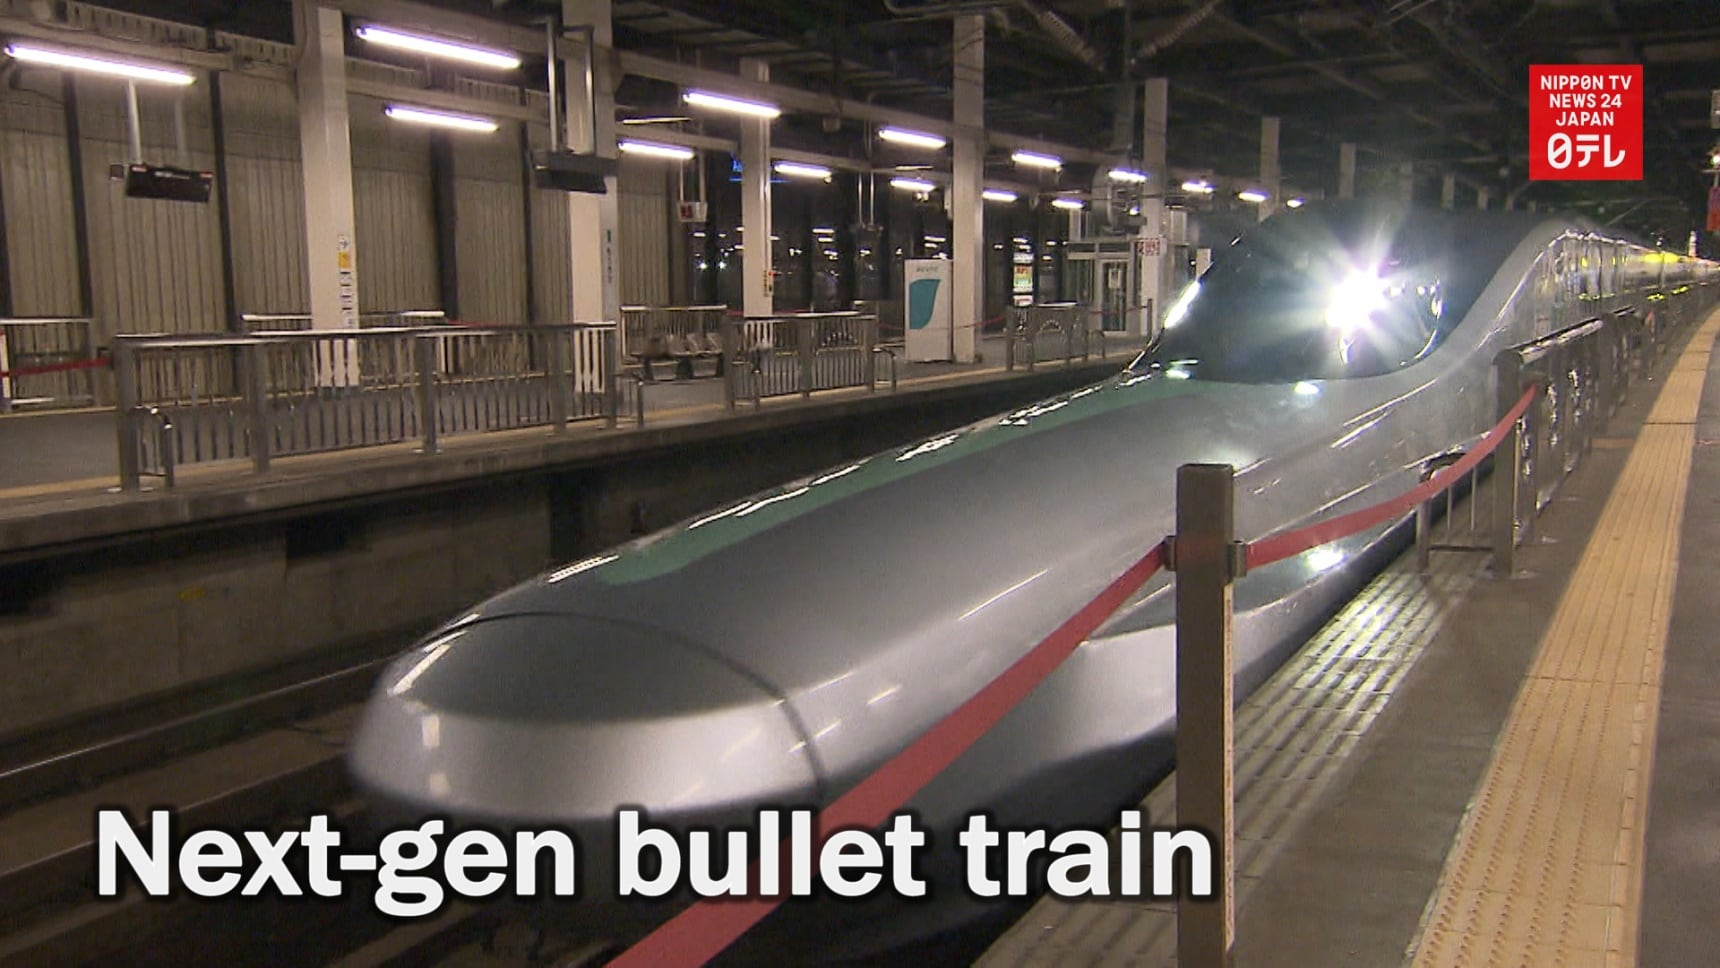 An Inside Look at the Next-Gen Bullet Train